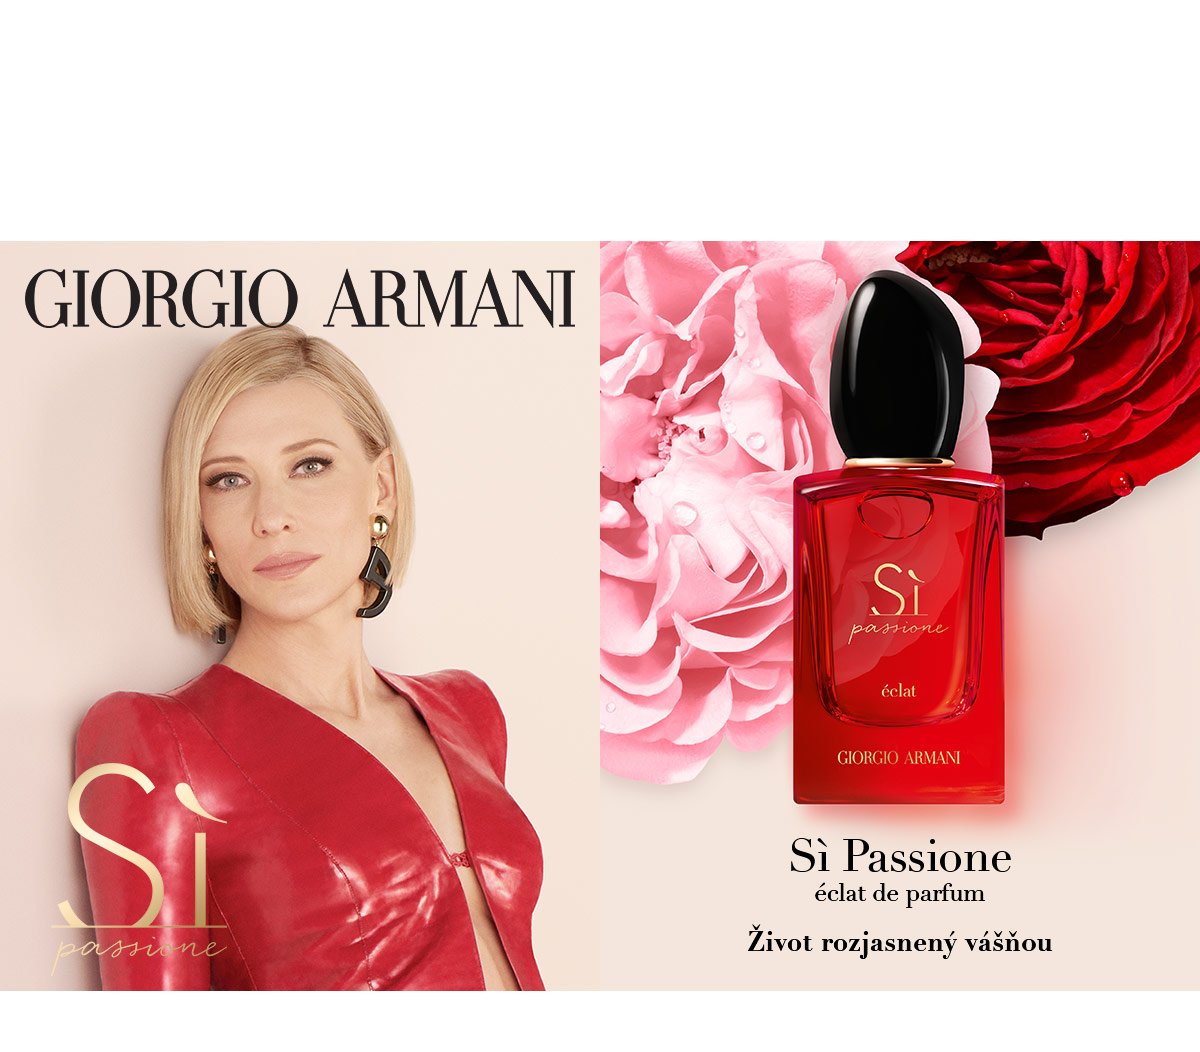 Nakúpte akýkoľvek Armani parfém nad 59 € a vyberte si v košíku 2 z 3 darčekov.